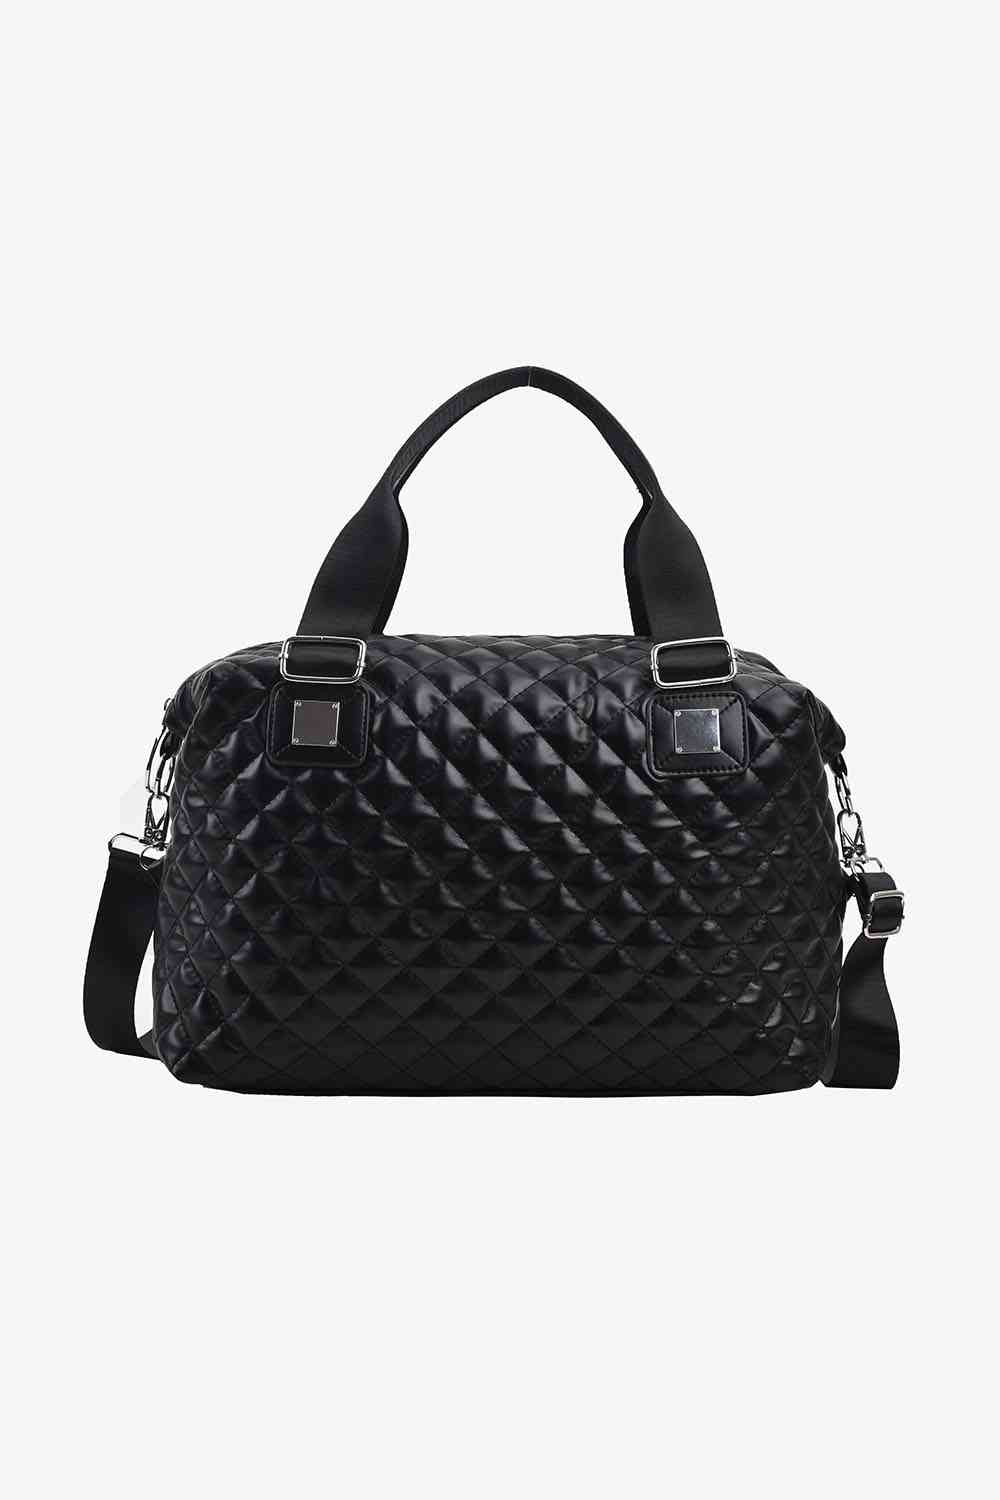 PU Leather Handbag - SELFTRITSS